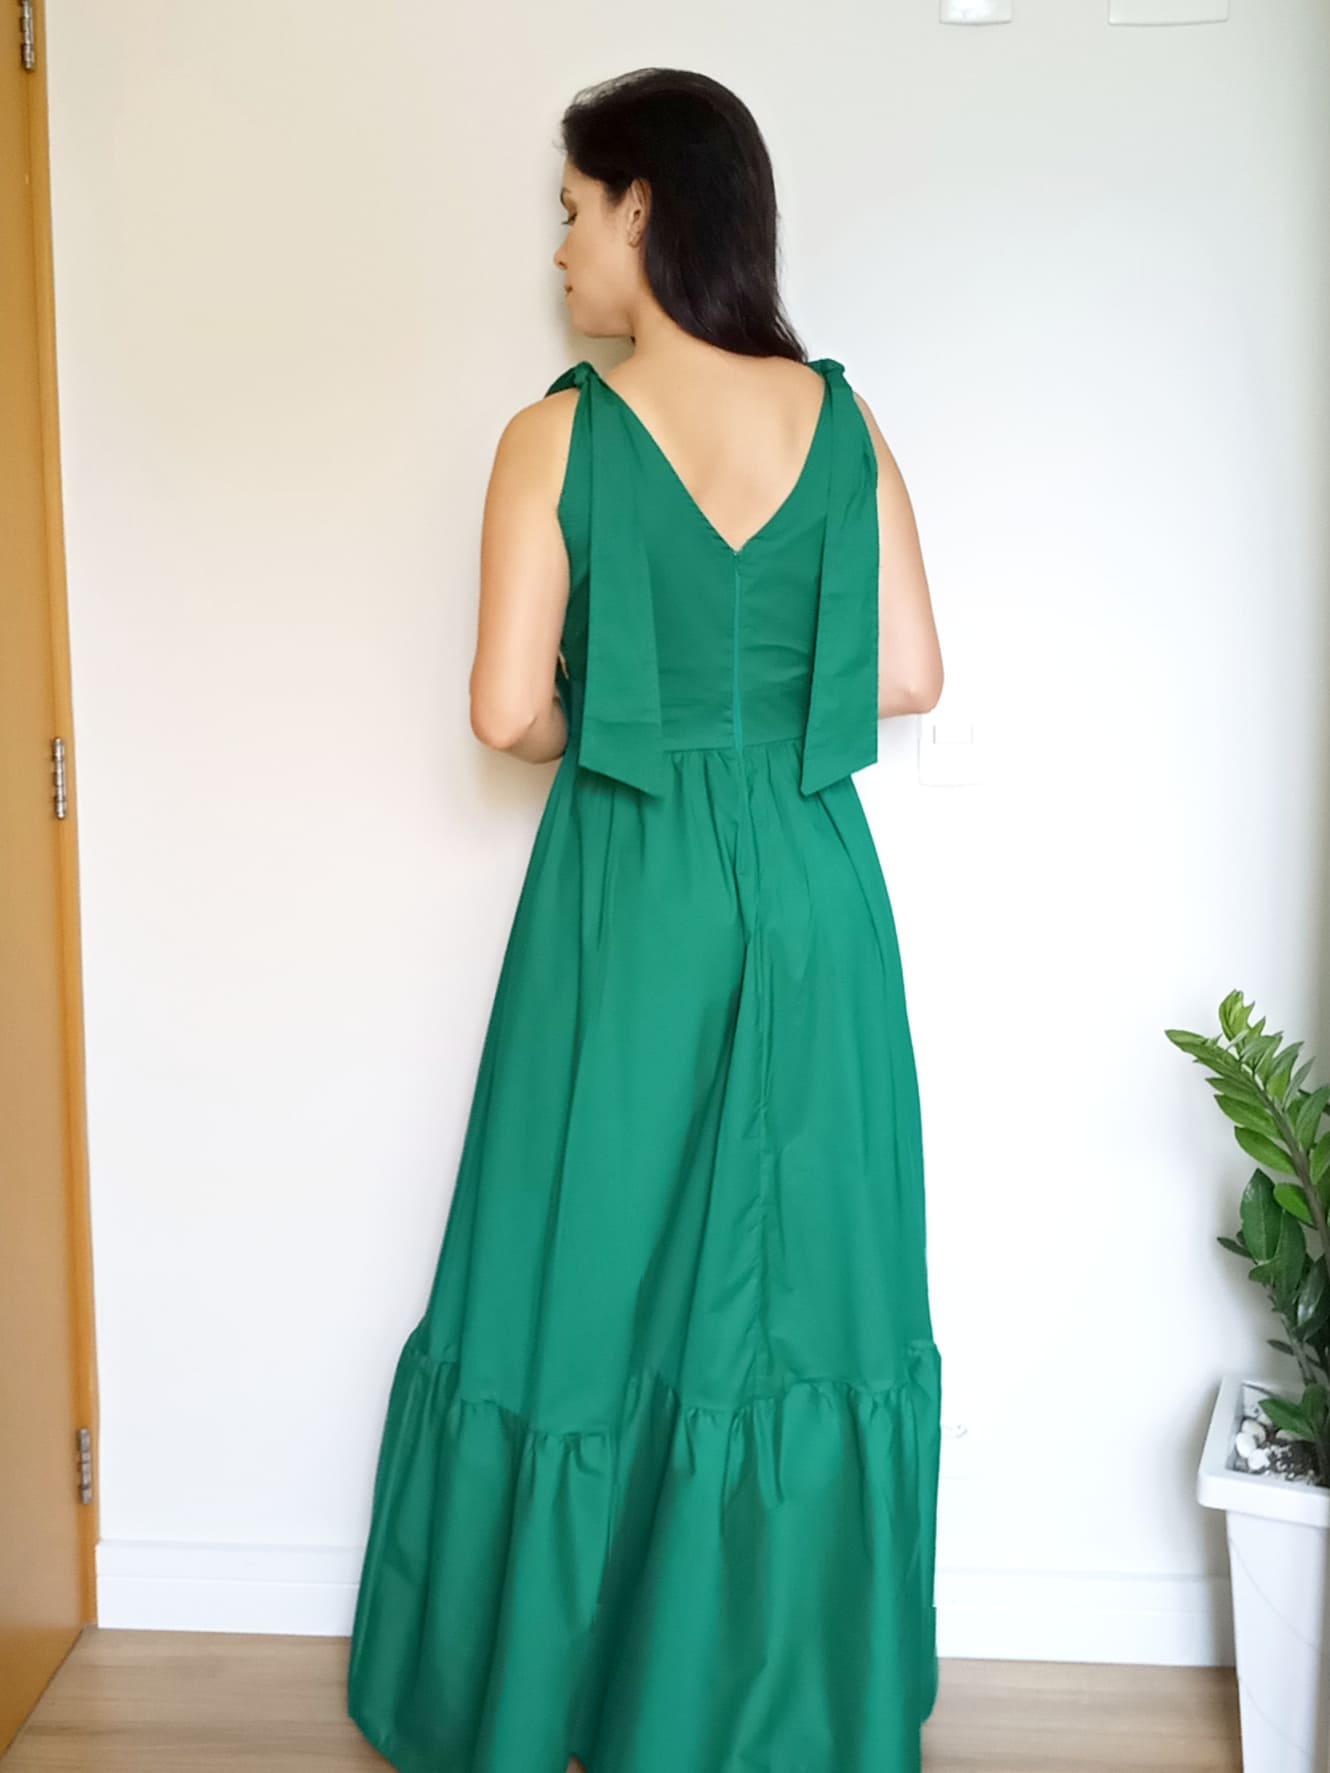 Vestido esmeralda